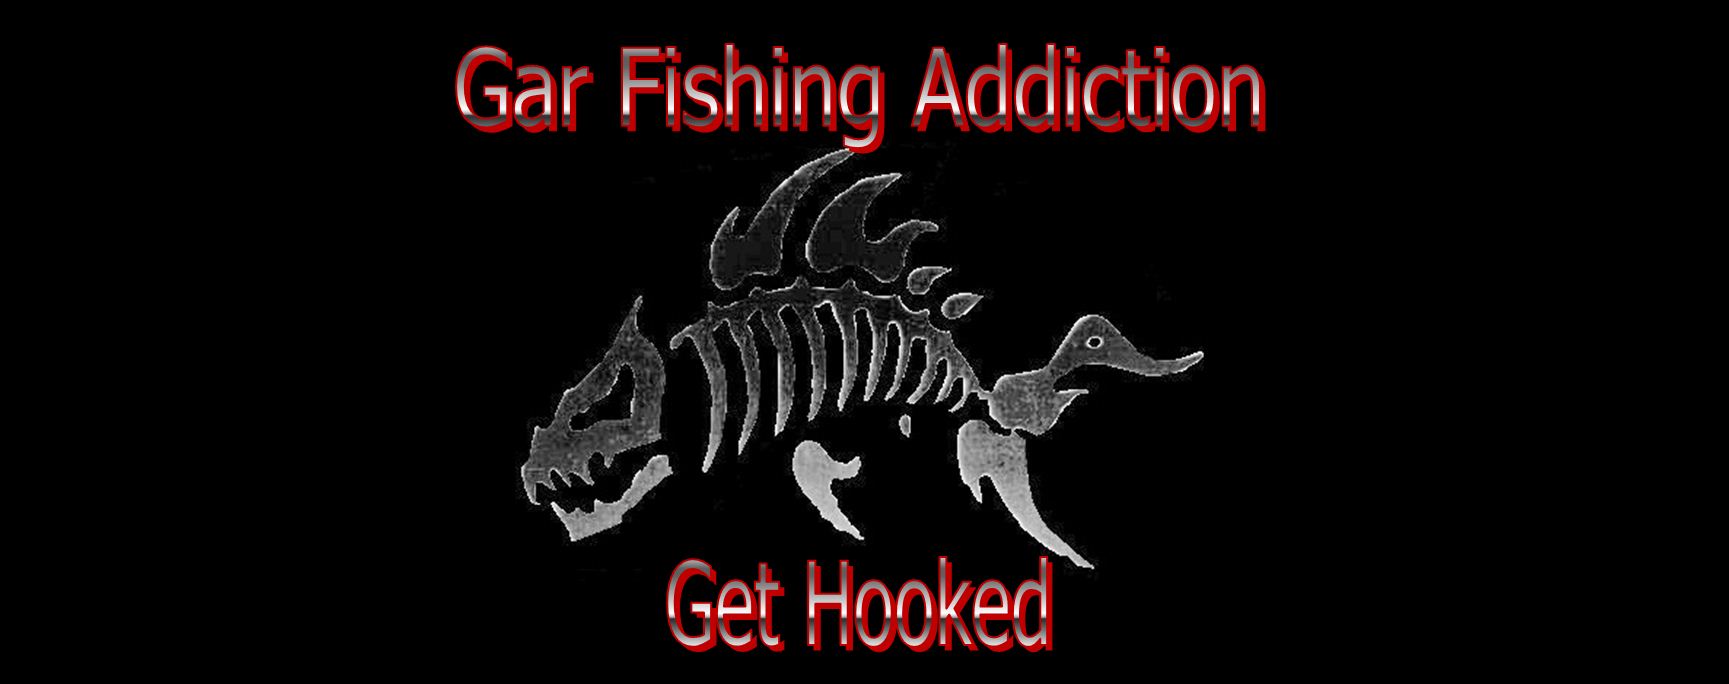 gar fishing addiction